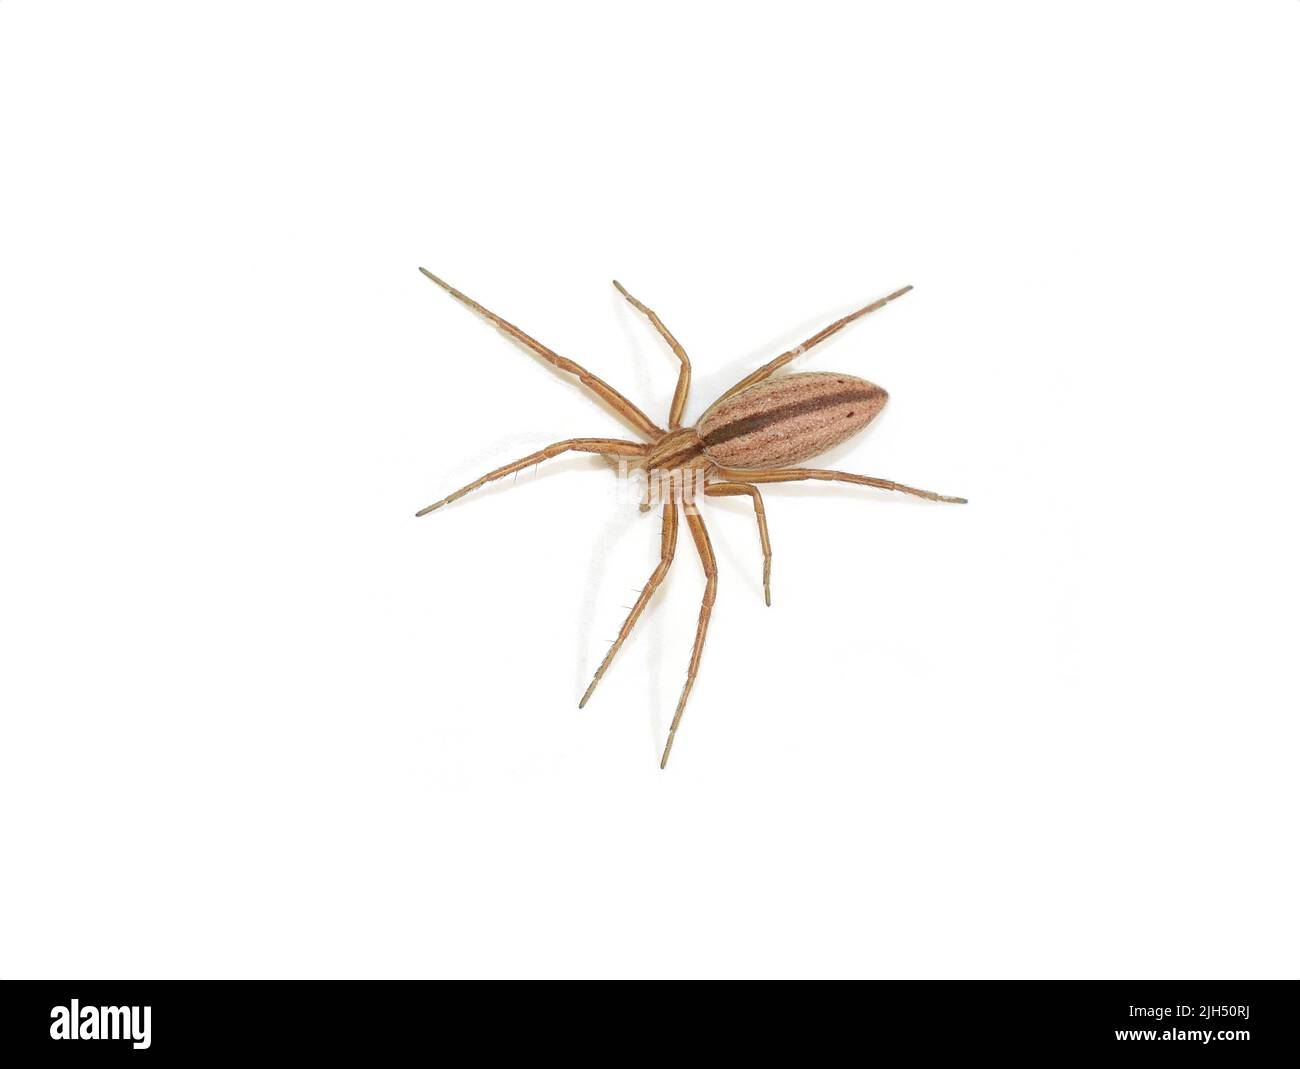 La araña oblonga Tibellus oblongus aislada sobre fondo blanco Foto de stock